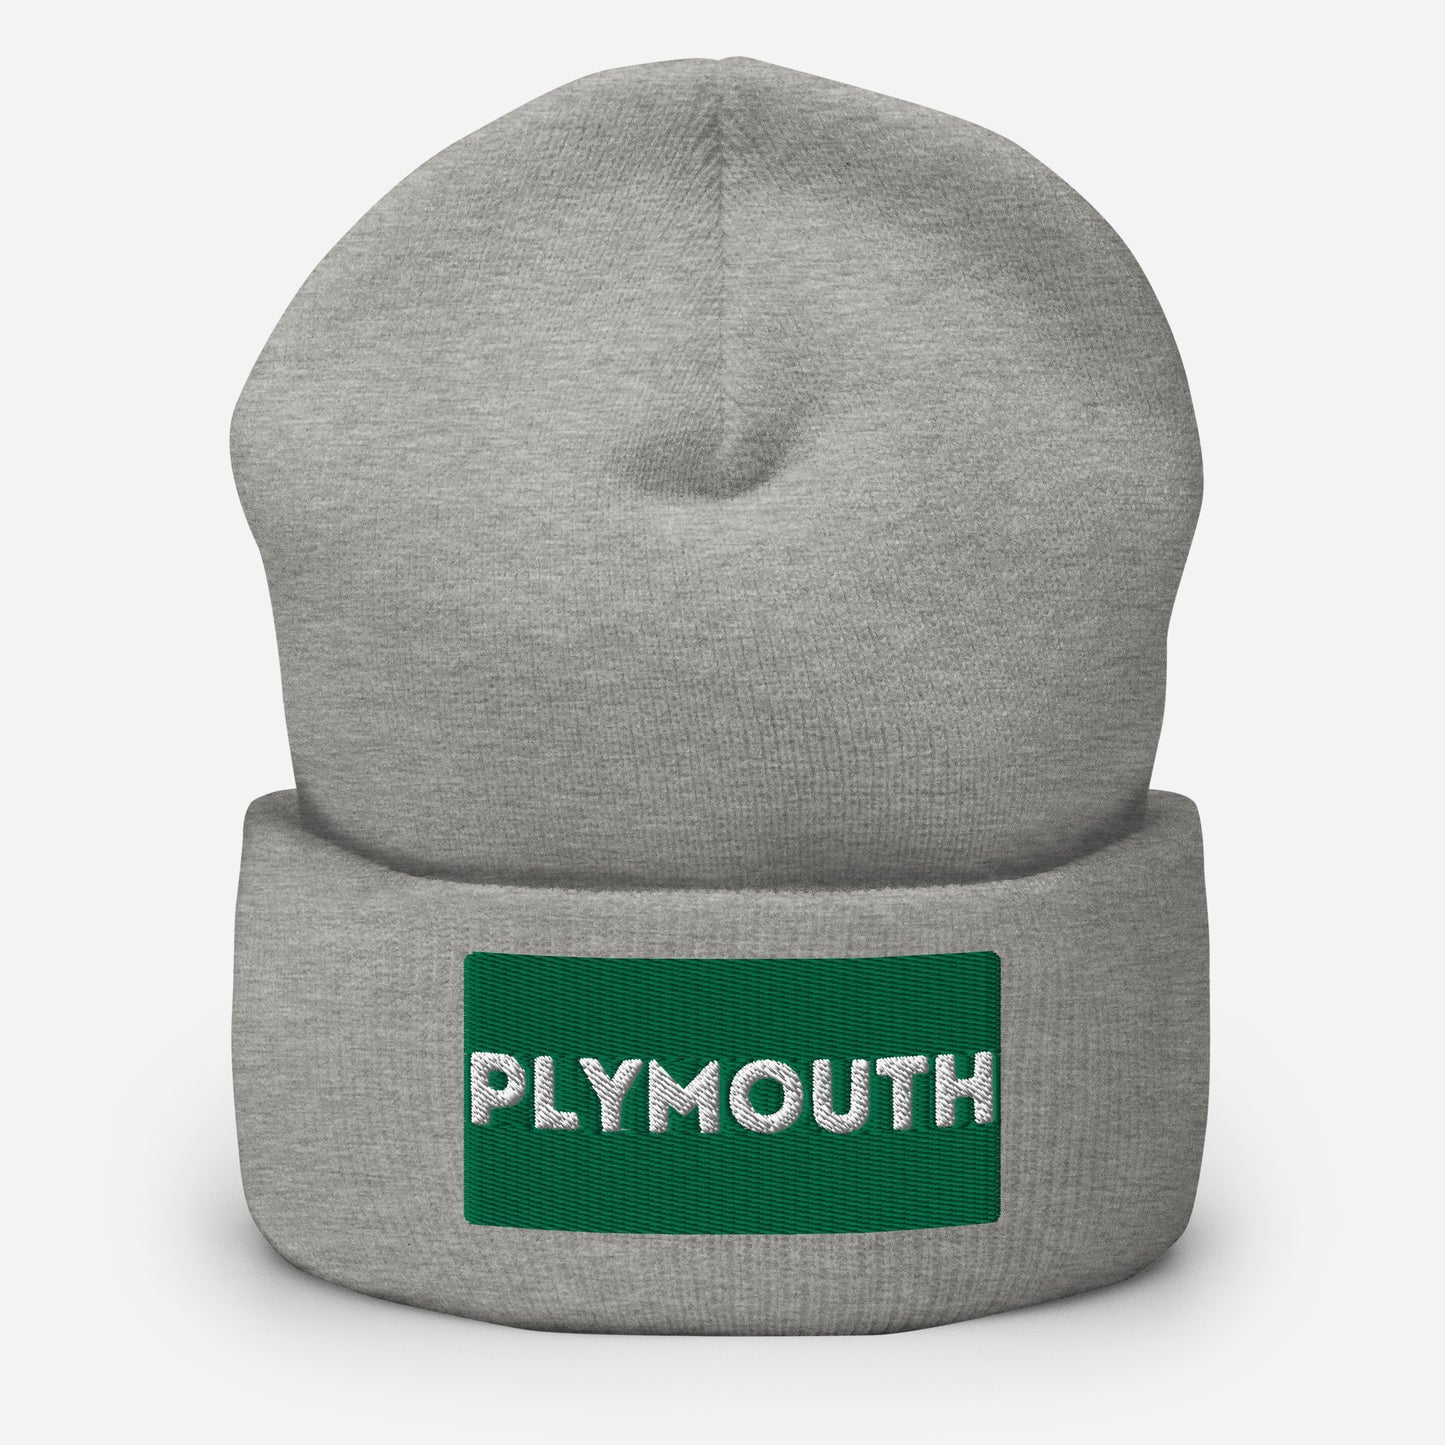 Plymouth Cuffed Beanie Hat